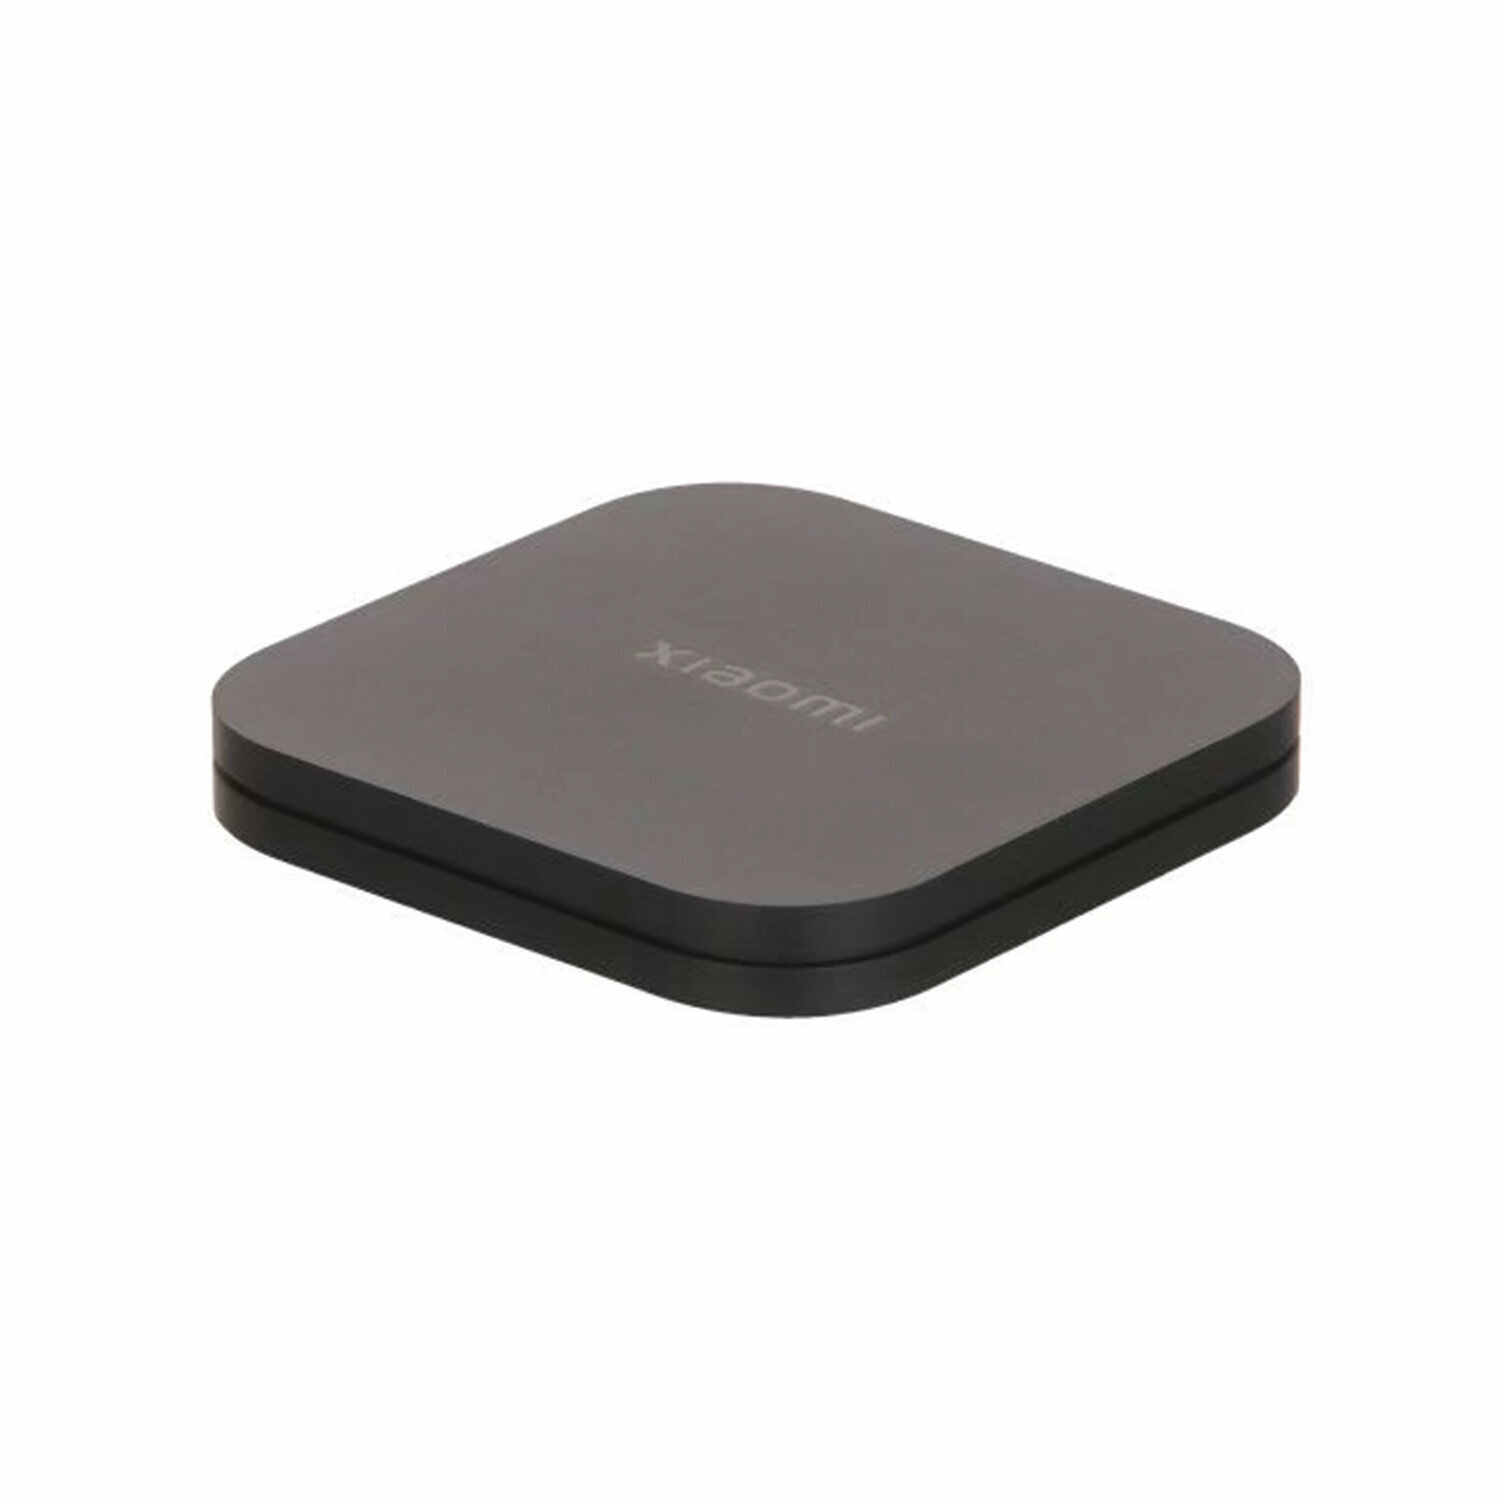 Приставка Смарт-ТВ XIAOMI Mi Box S 2nd Gen Google TV 4 ядра 2 Gb+8 Gb HDMI Wi-Fi пульт ДУ черный /Квант продажи 1 ед./